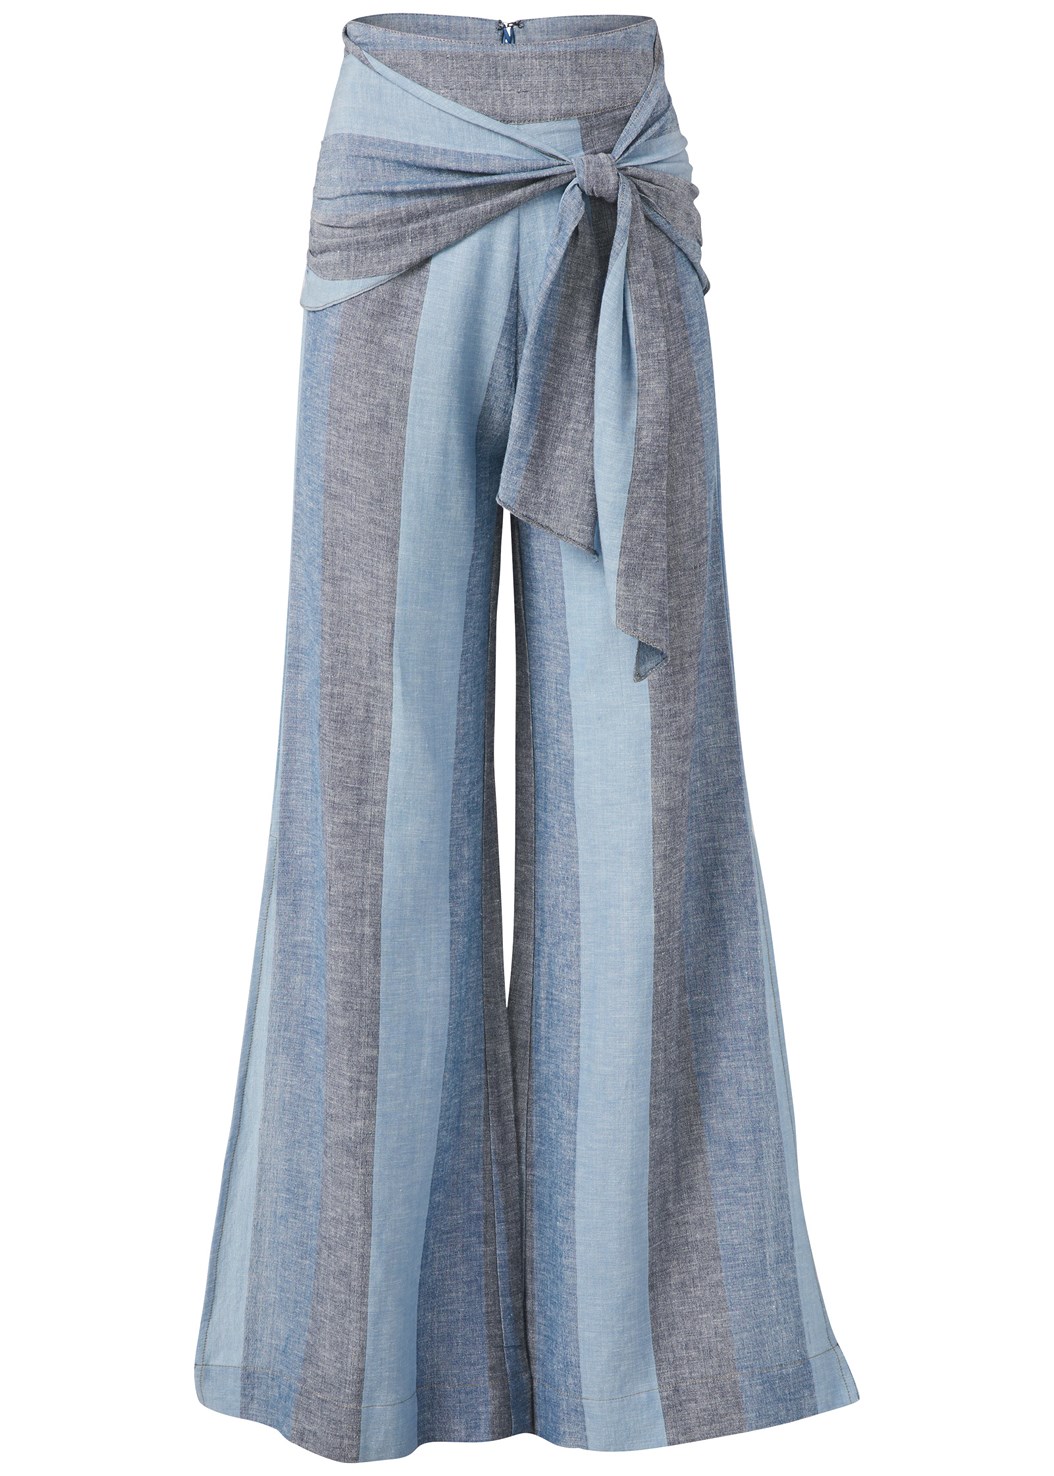 Plus Size Tie Front Linen Pants in Blue Multi | VENUS